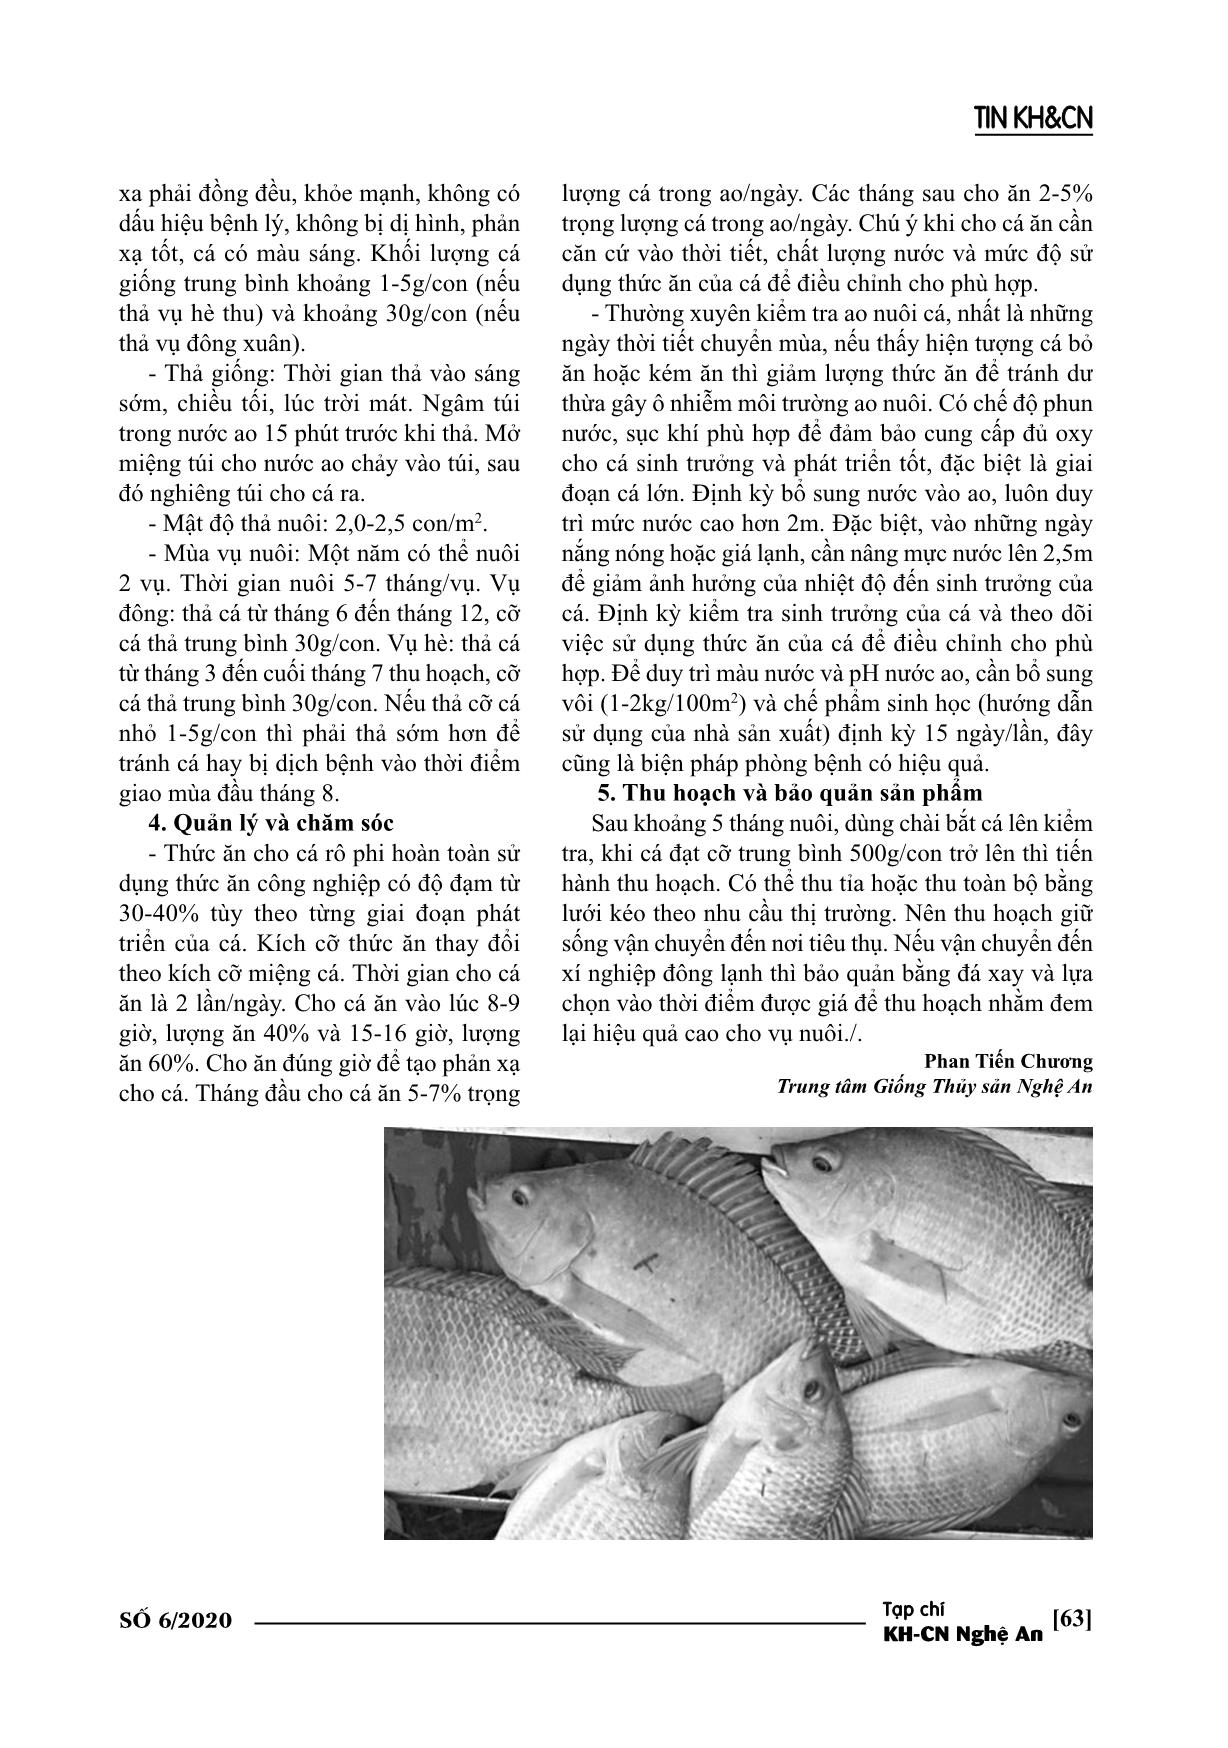 Quy trình nuôi thương phẩm cá rô phi lai xa dòng Israel tại Nghệ An trang 2